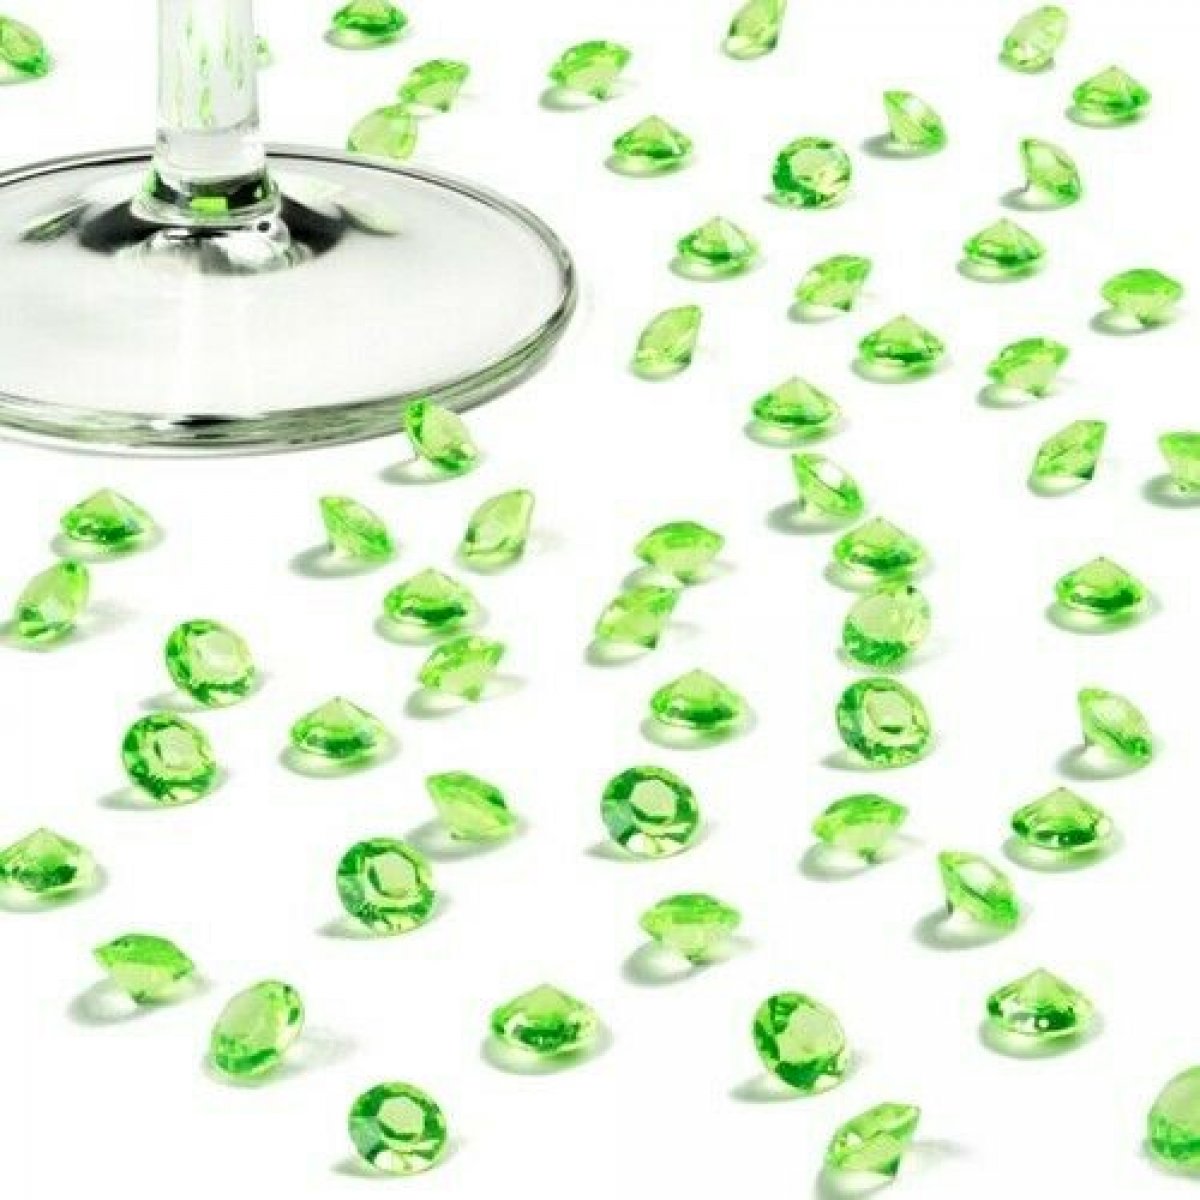 Diamants de table 10 mm - vert anis x 100 pièces 